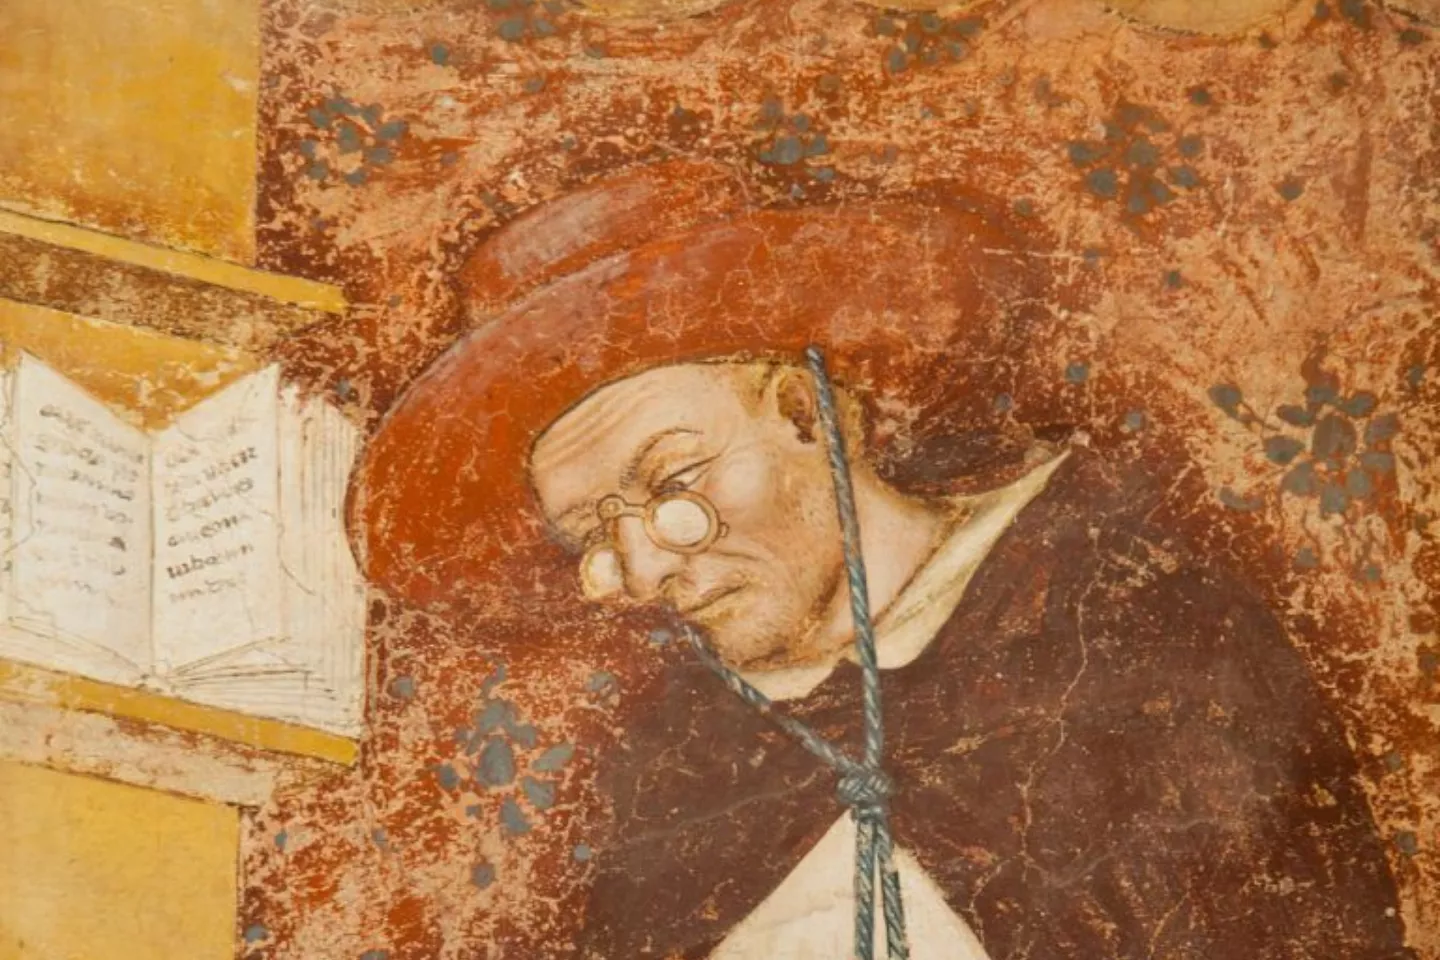 Quadre del cardenal Hug de Provença amb ulleres, fet per Tommaso da Modena l'any 1352